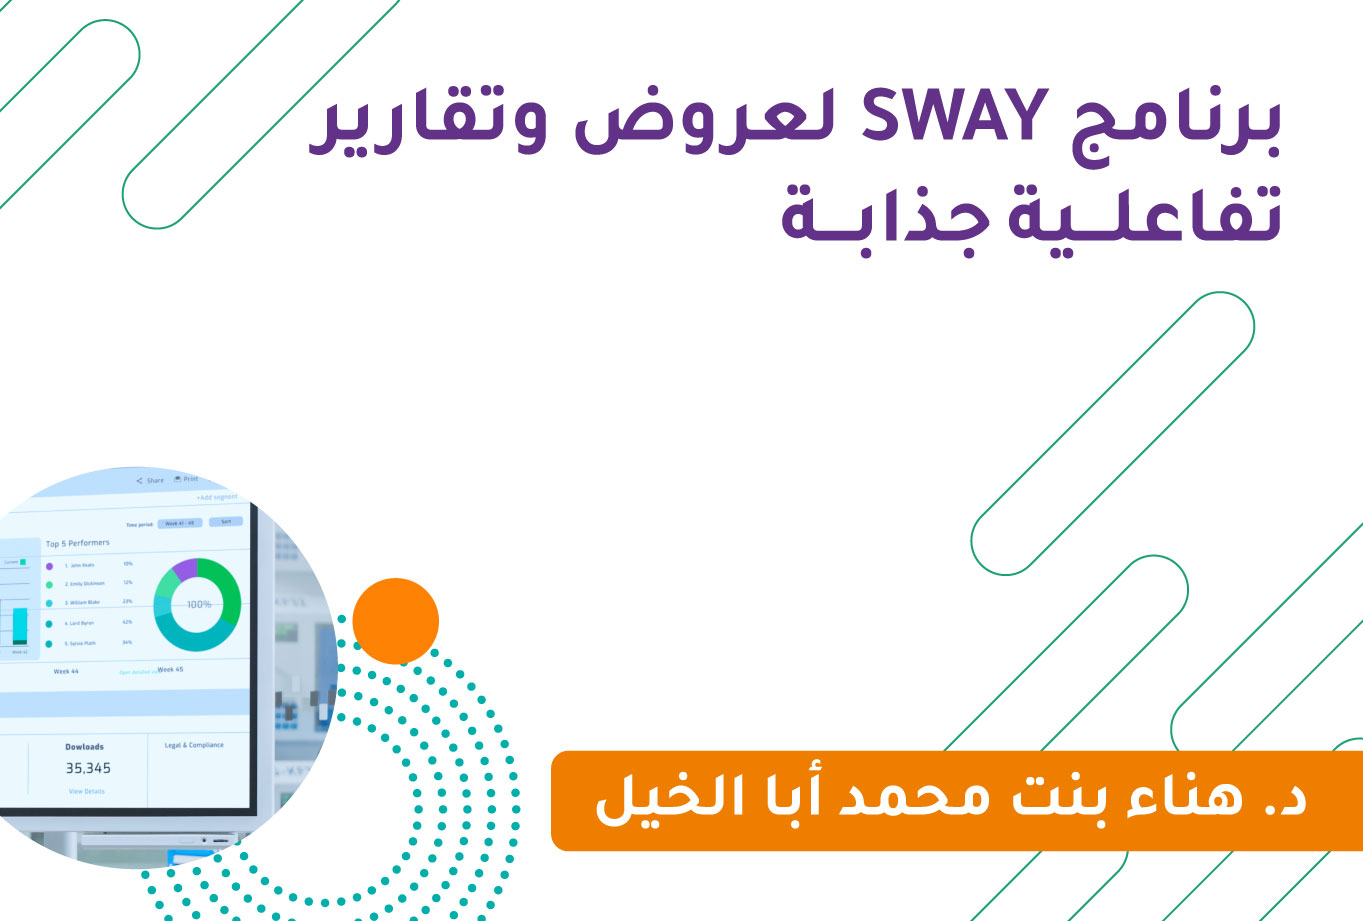 برنامج SWAY لعروض وتقارير تفاعلية جذابة